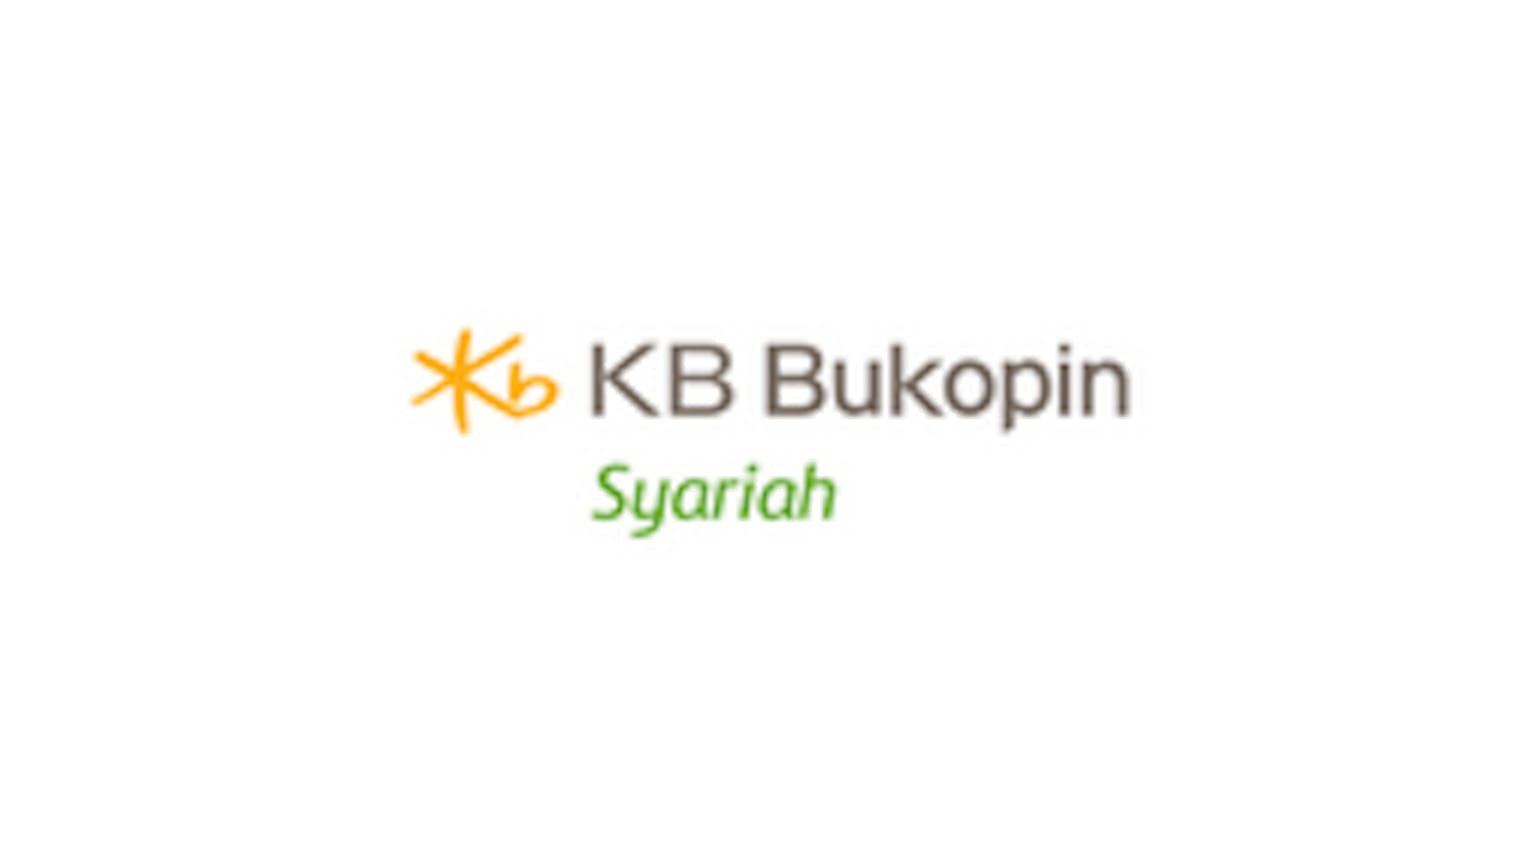 Bank KB Syariah Bukopin